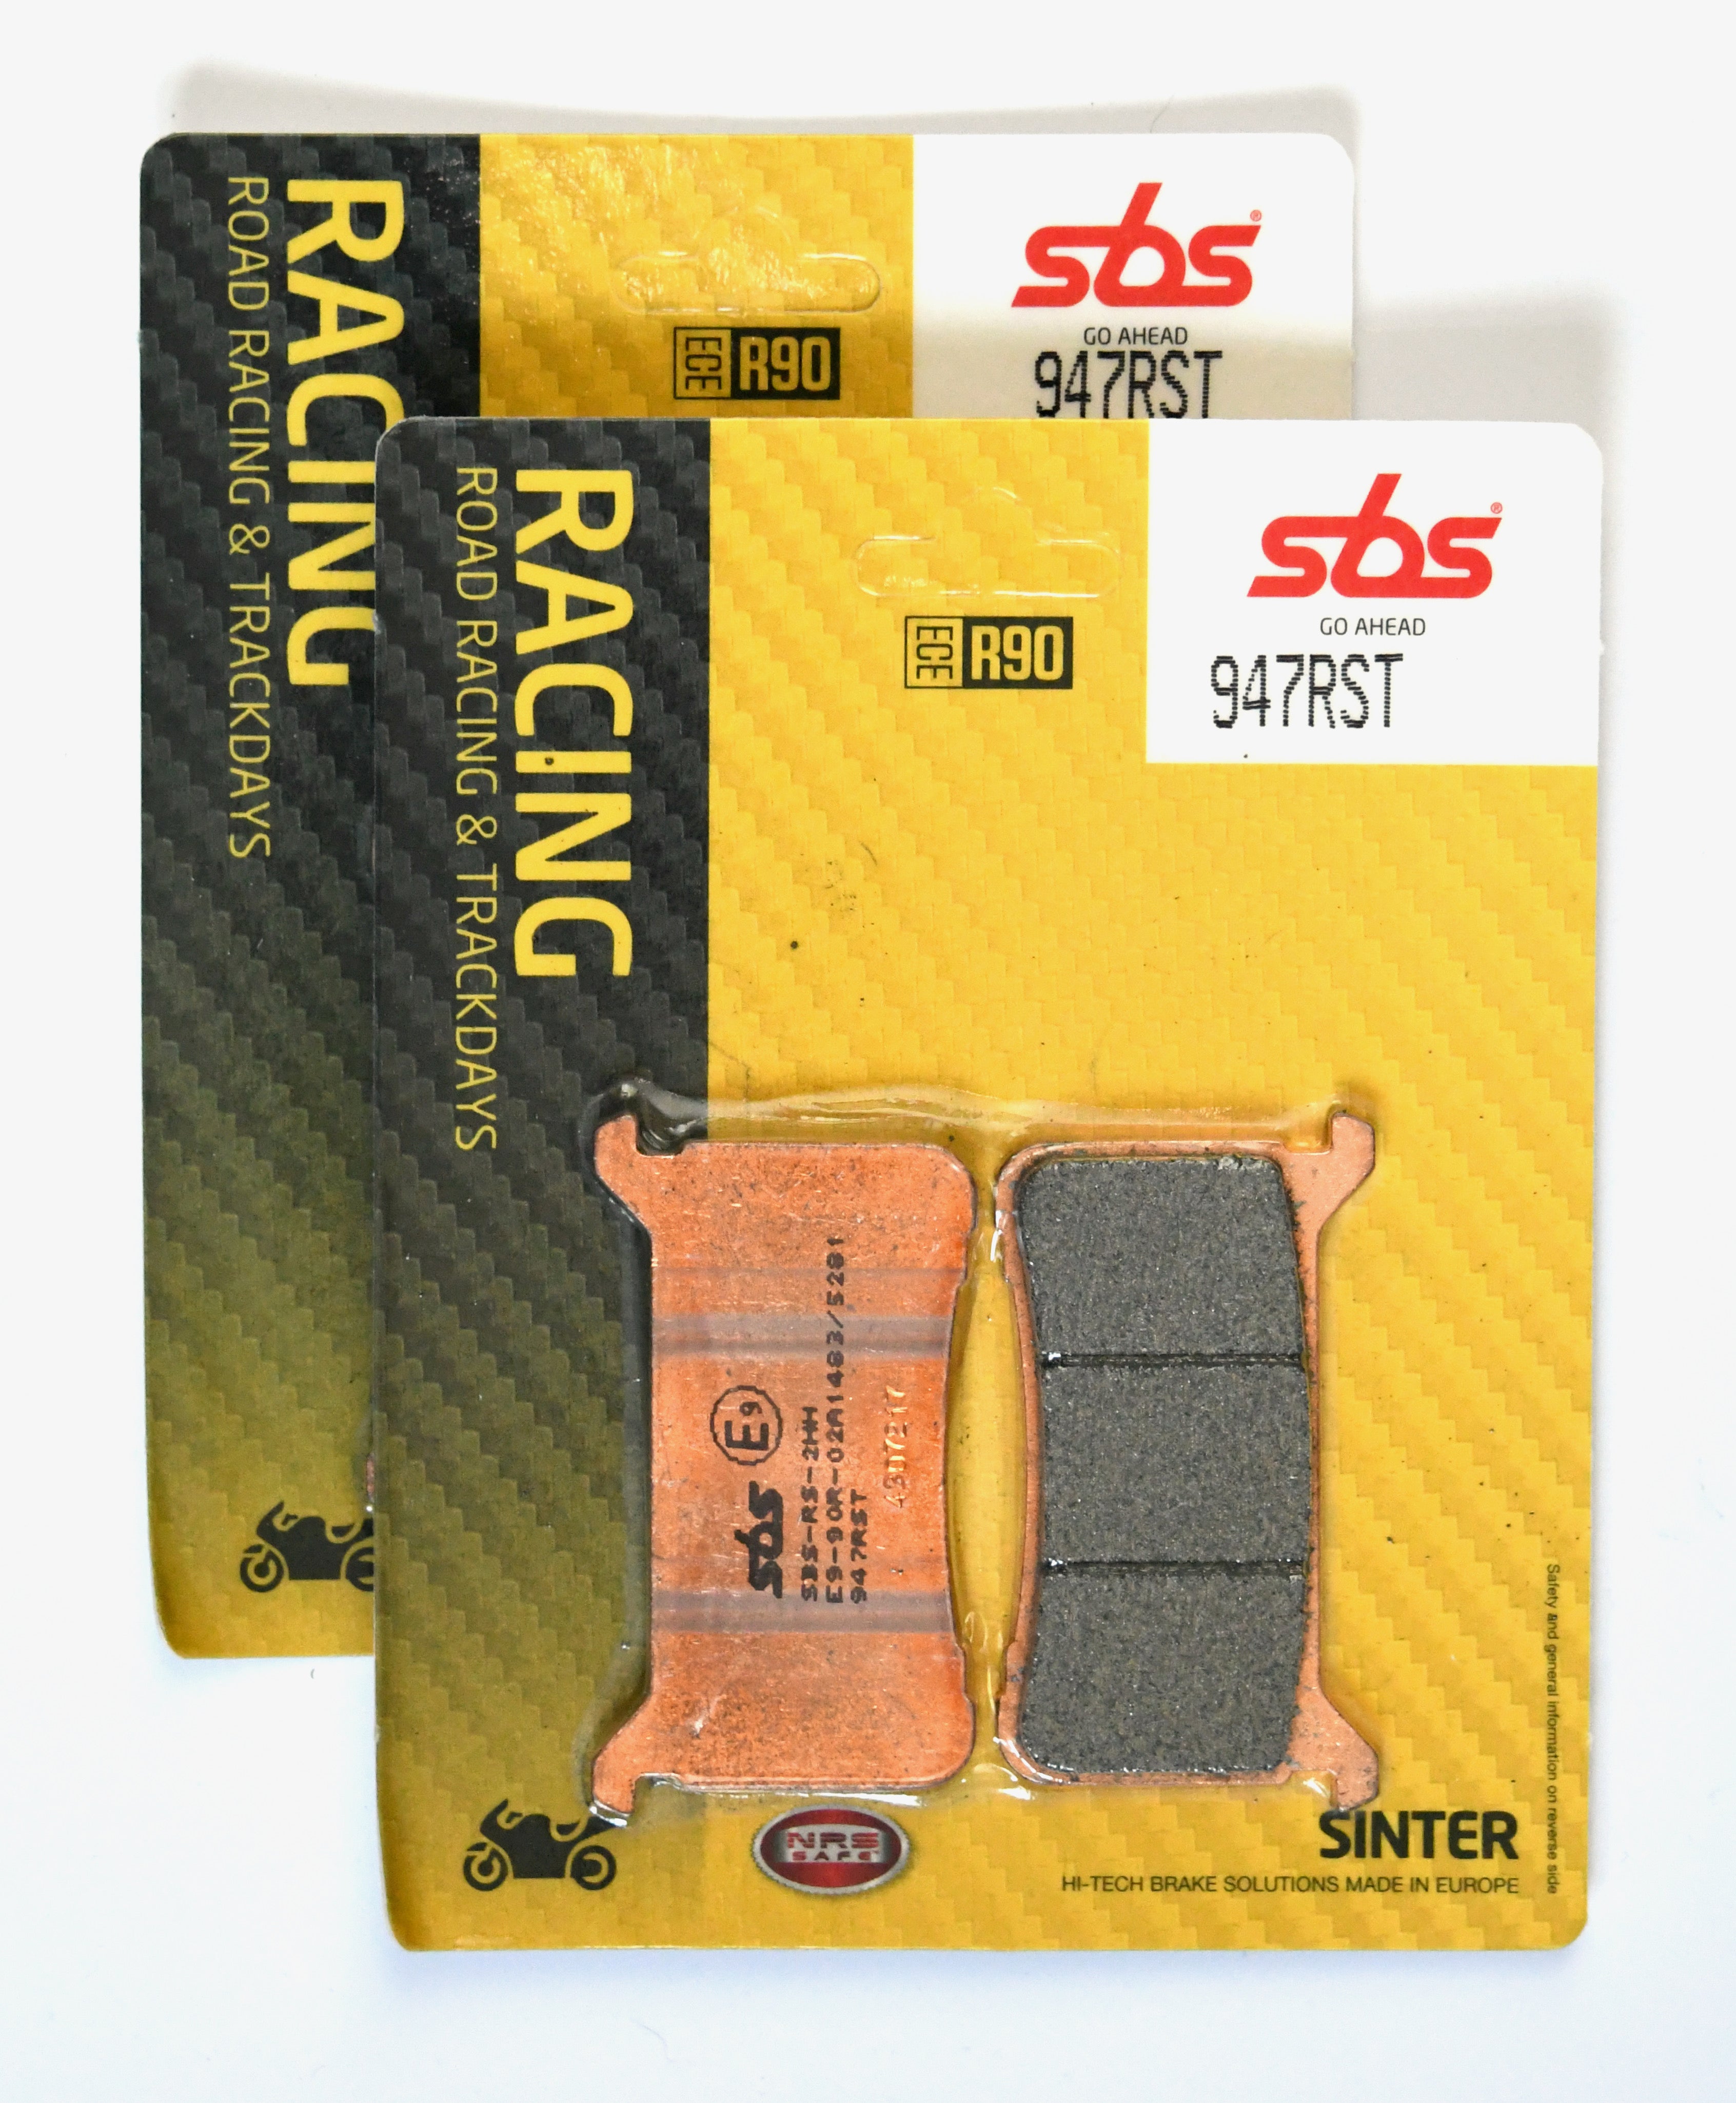 SBS 947RST Racing Sinter Brake Pads (Full Front Set)